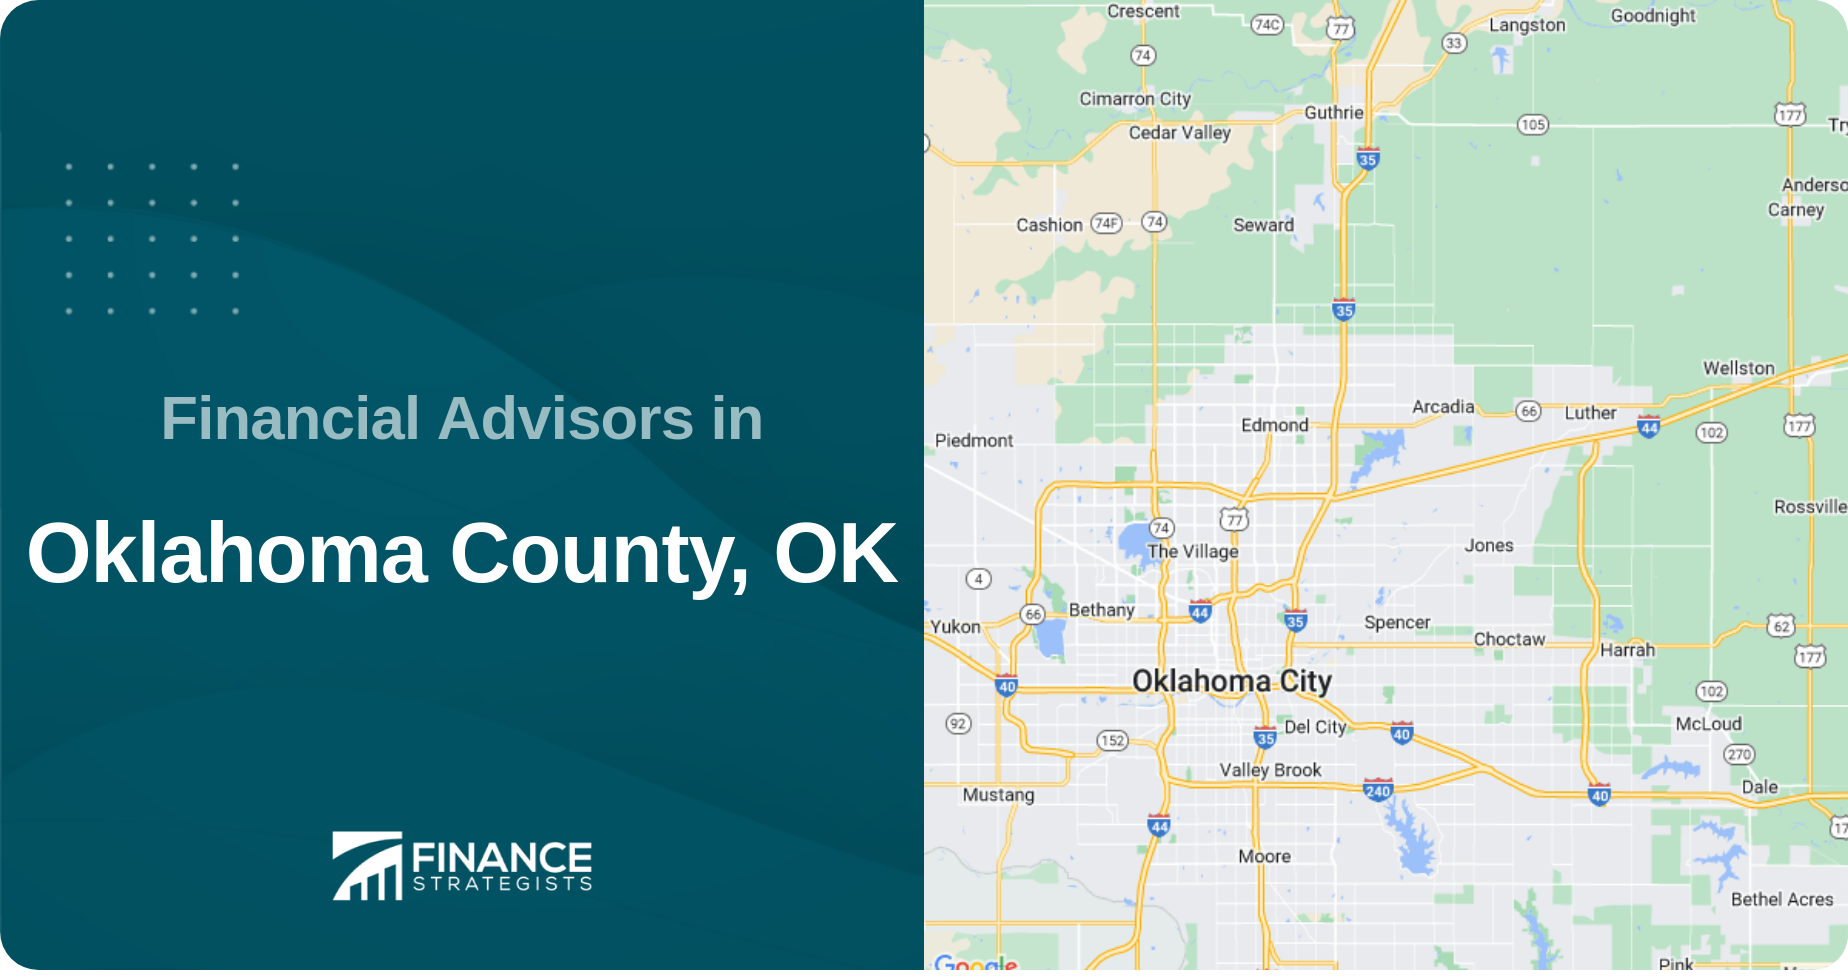 Financial Advisors in Oklahoma County, OK